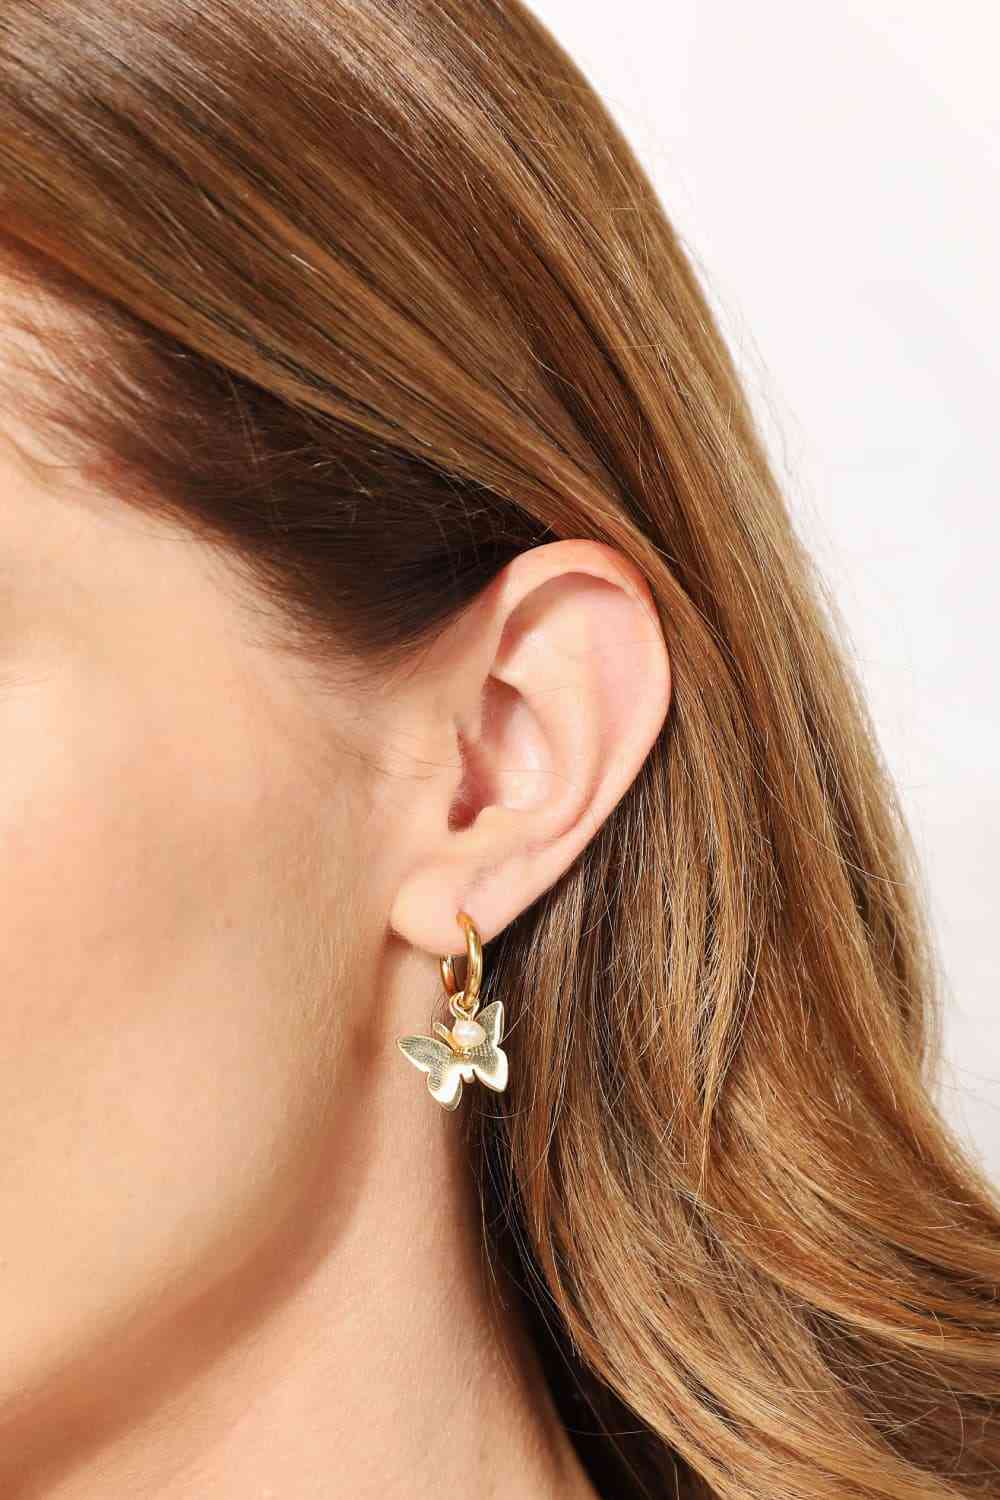 stainless steel earrings for guys